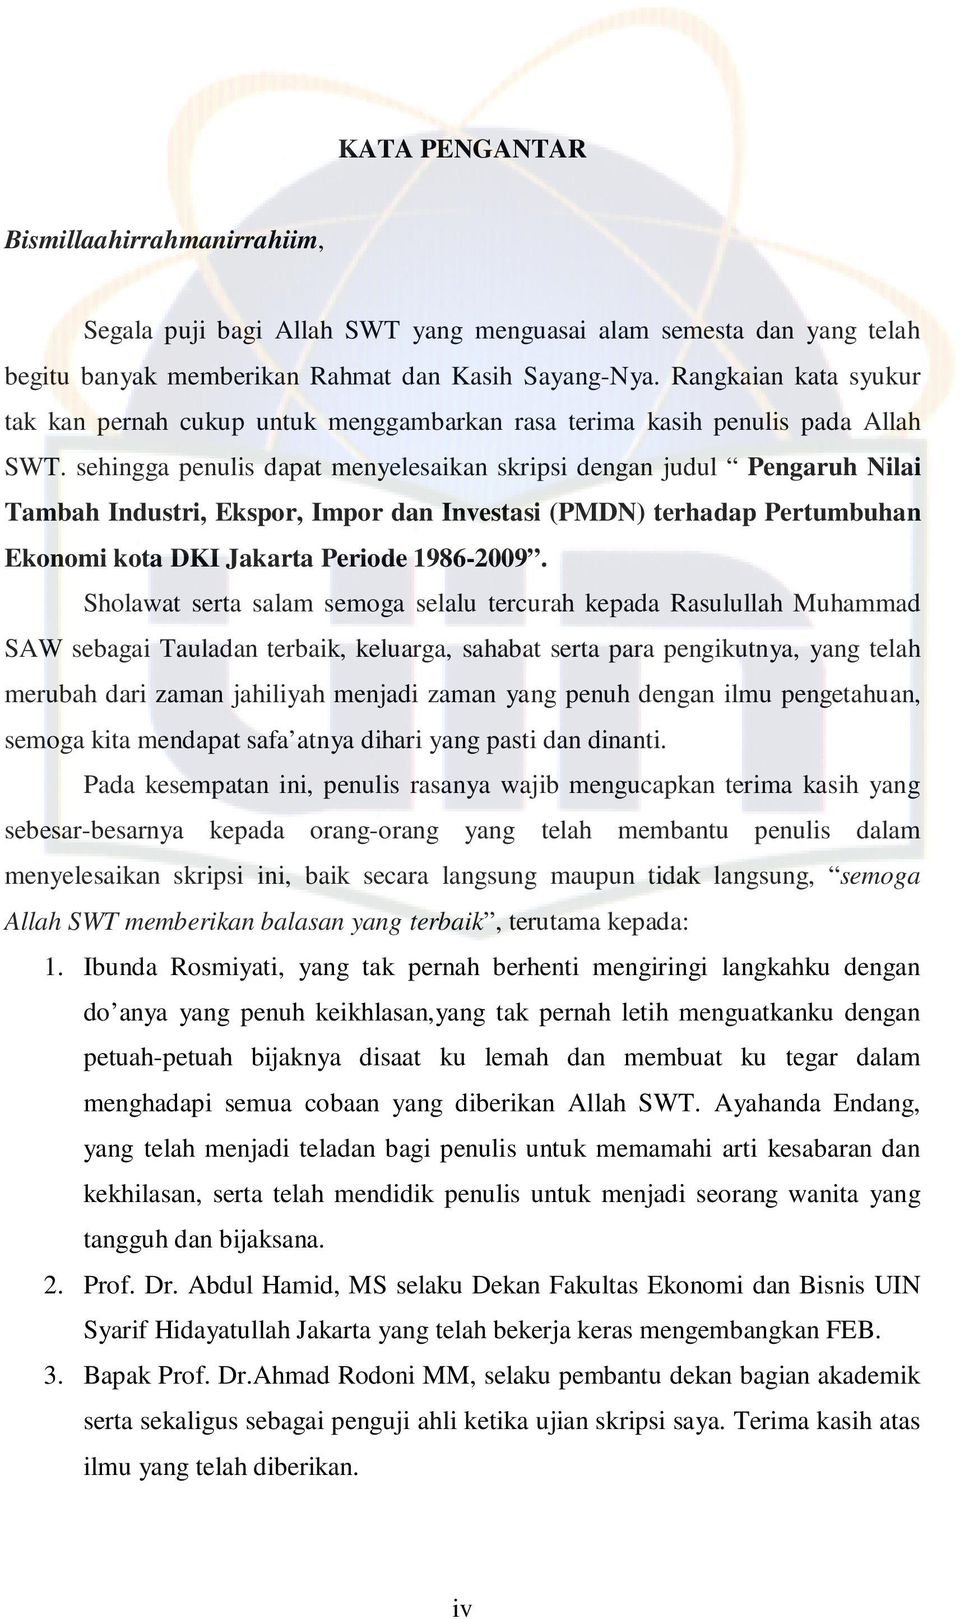 sehingga penulis dapat menyelesaikan skripsi dengan judul Pengaruh Nilai Tambah Industri, Ekspor, Impor dan Investasi (PMDN) terhadap Pertumbuhan Ekonomi kota DKI Jakarta Periode 1986-2009.